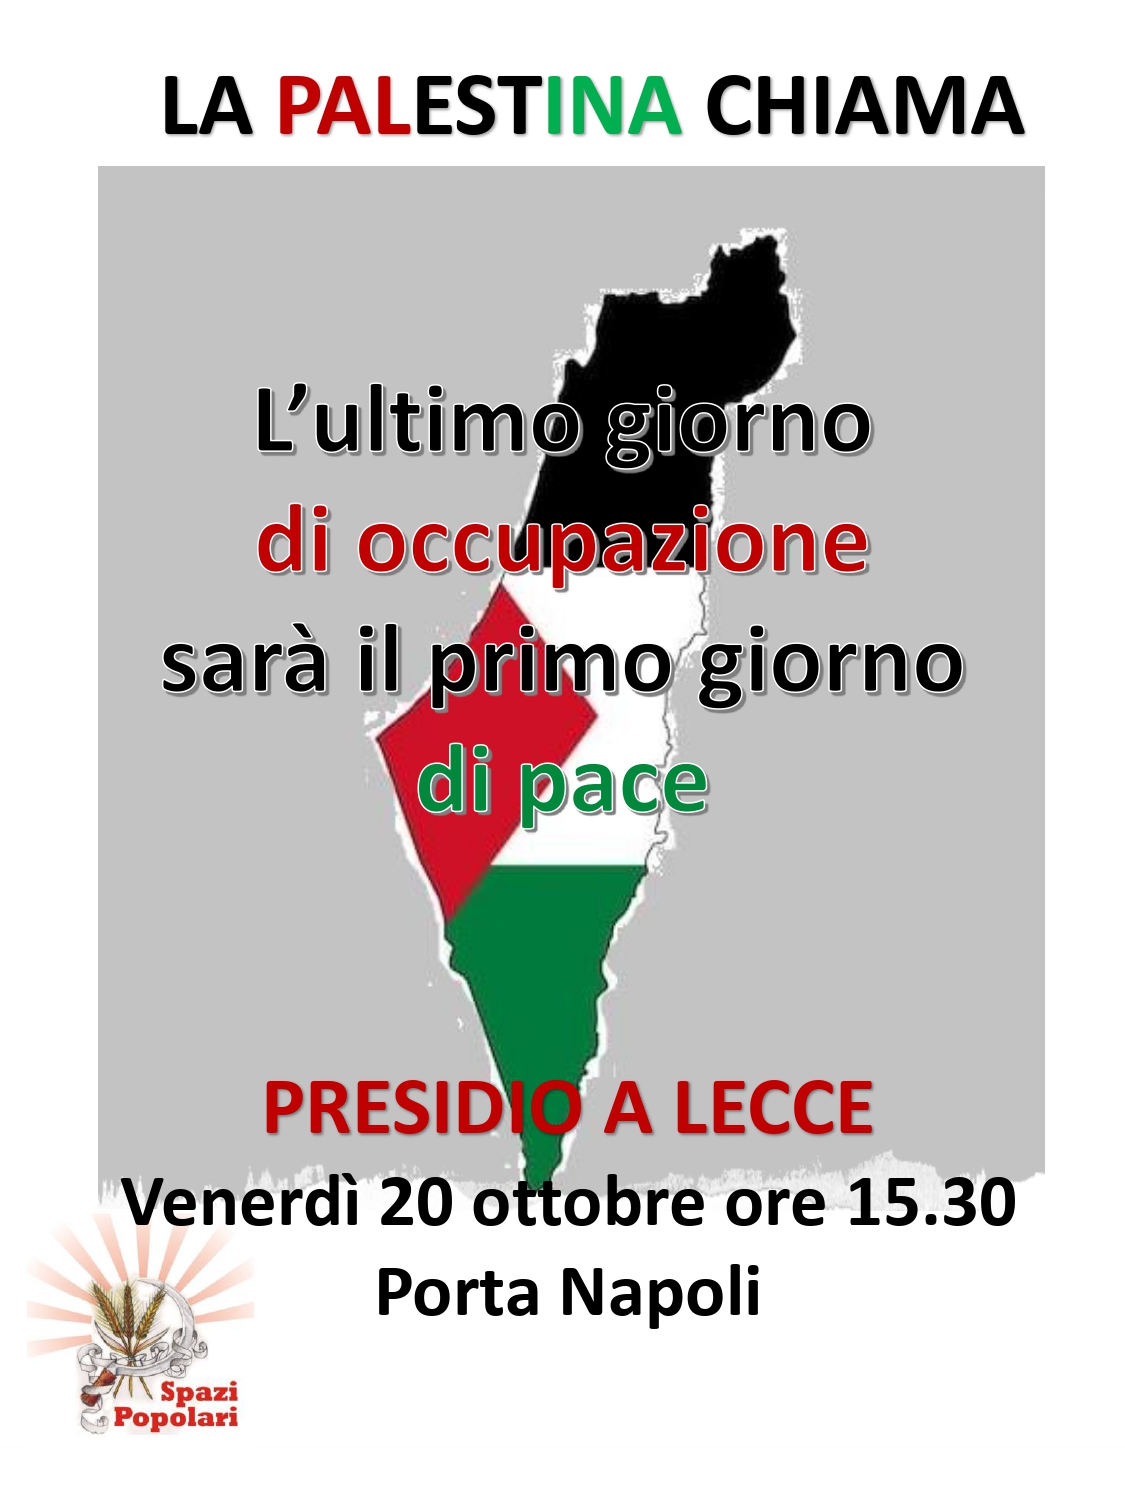 Anche Lecce al fianco del popolo palestinese e di Gaza. Sit in a Porta Napoli, inizio ore 15.30